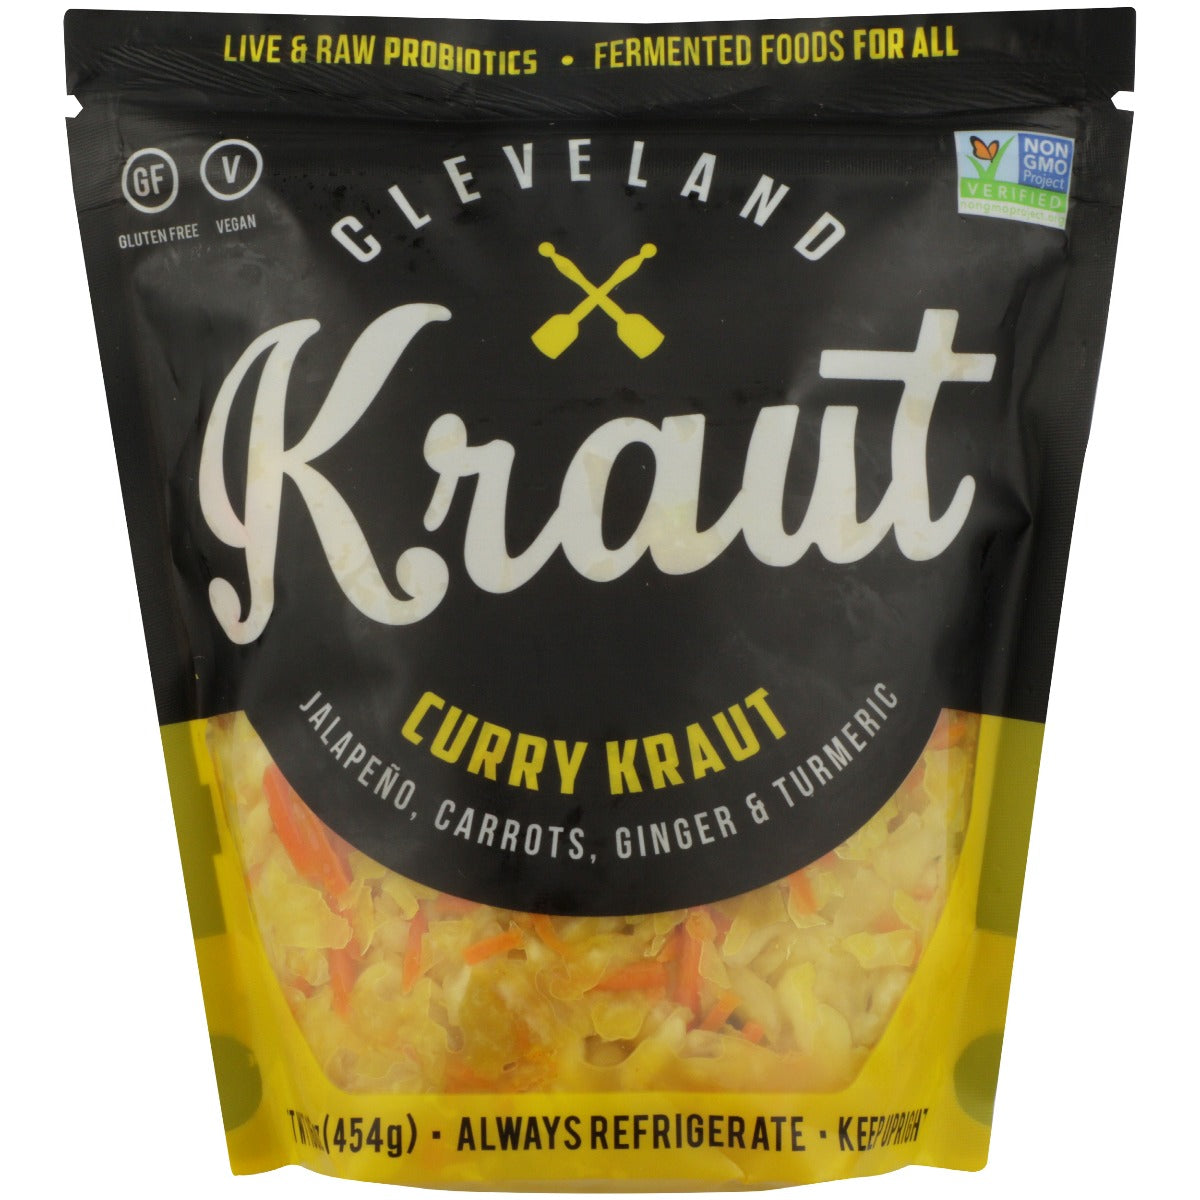 CLEVELAND KRAUT: Curry Sauerkraut, 16 oz - Vending Business Solutions